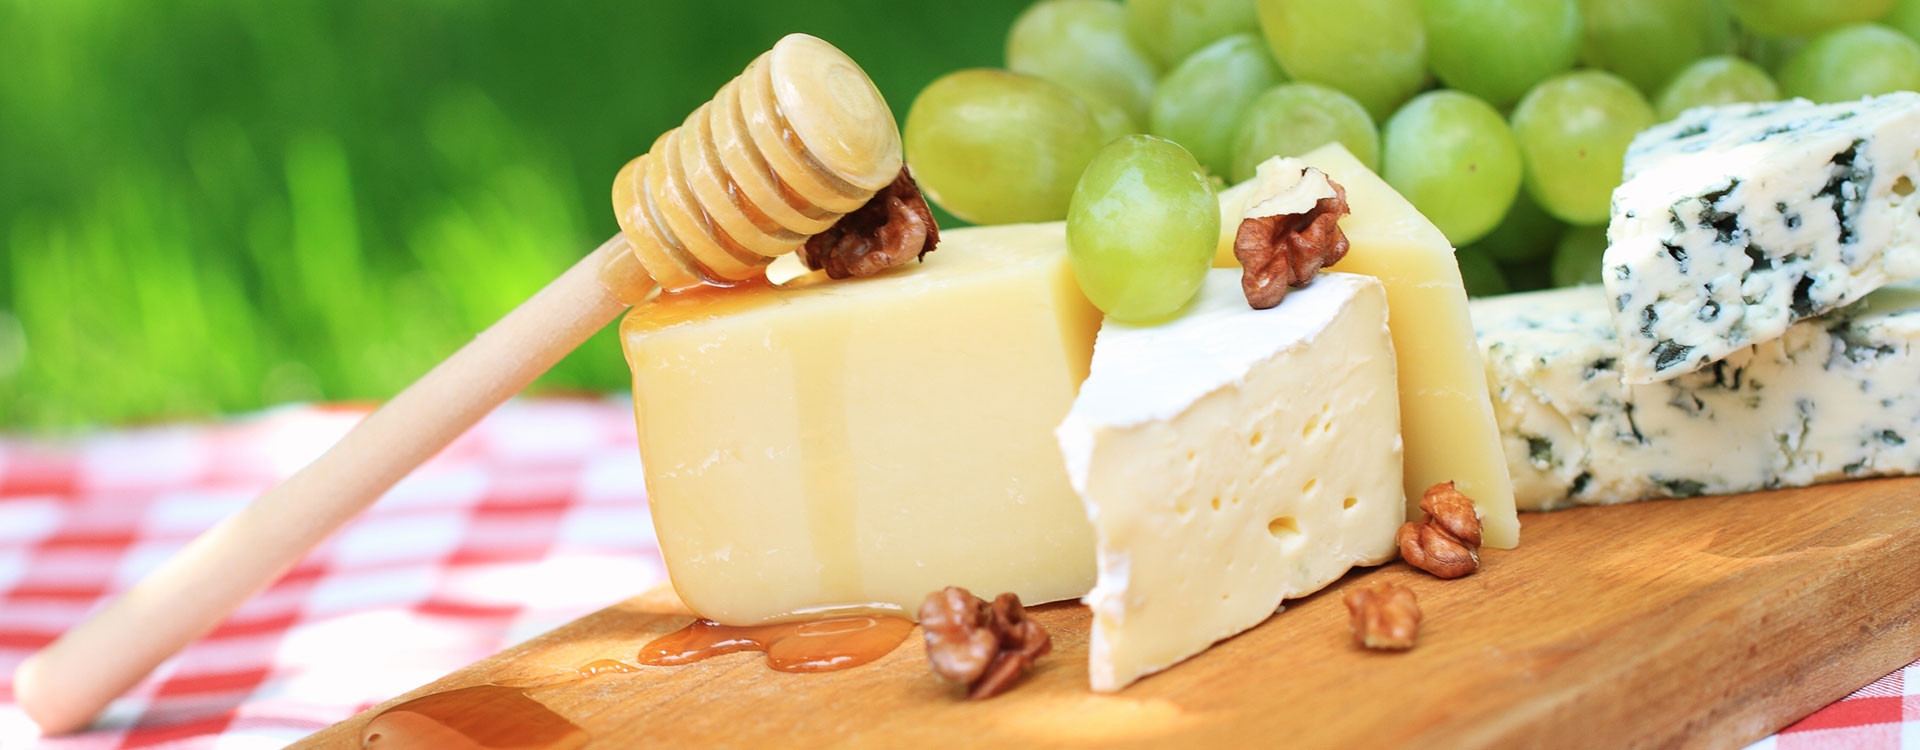 Italienische Käse für Picknicks